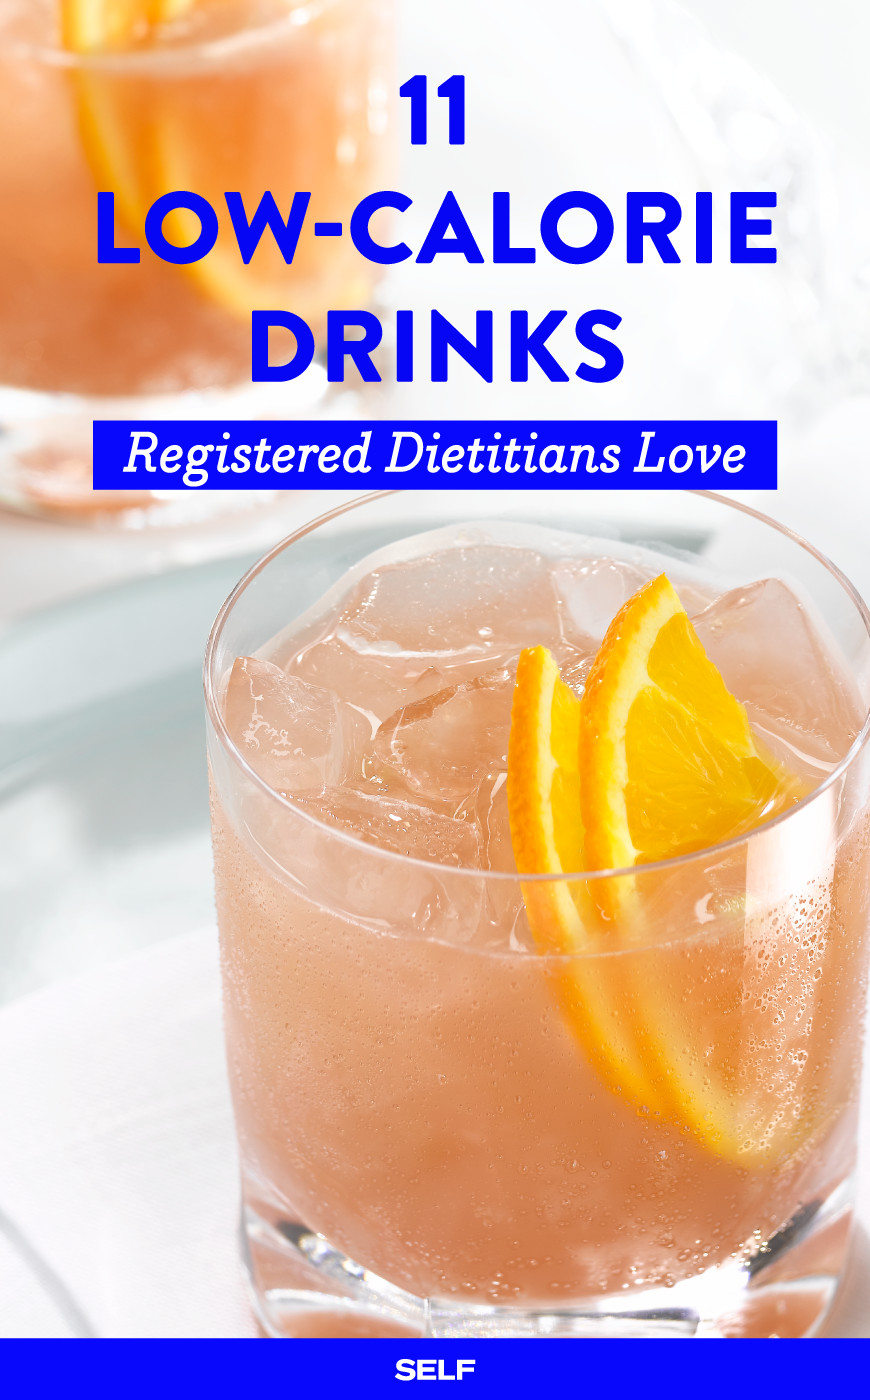 Low Calorie Vodka Drink Recipes
 14 Low Calorie Alcoholic Drinks Registered Dietitians Love